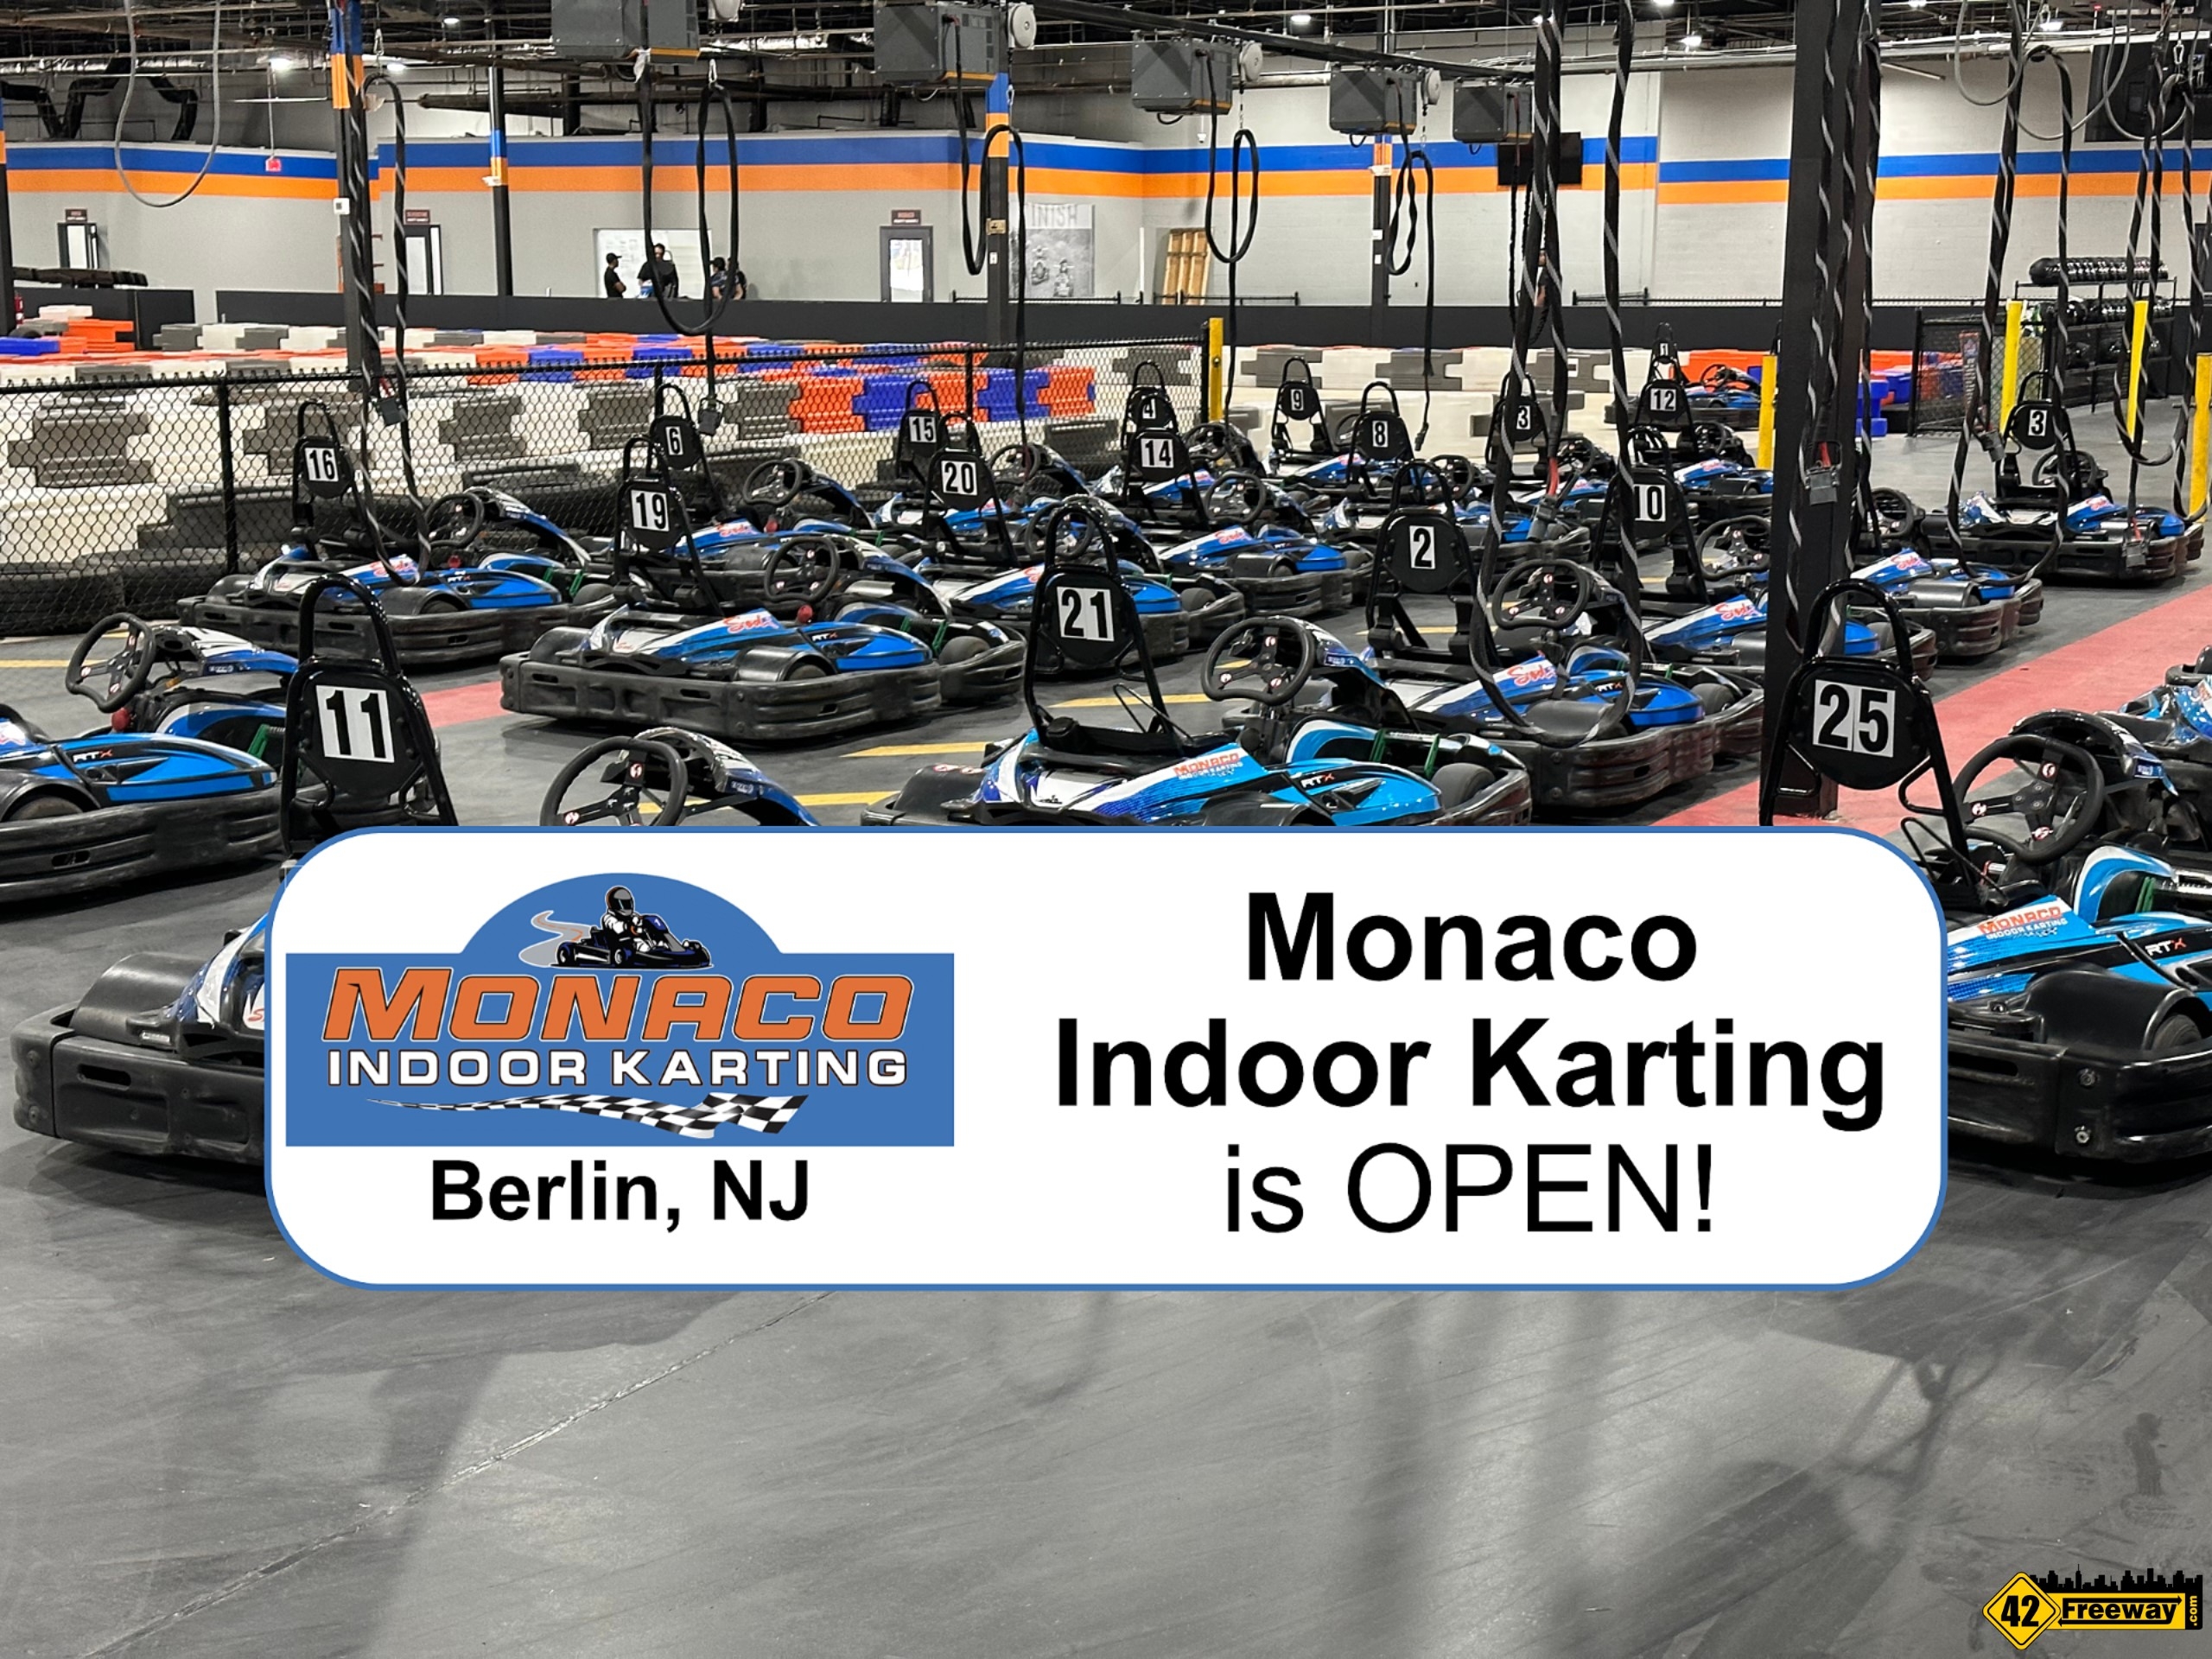 Monaco Indoor Karting in Berlin NJ is Open! - 42 Freeway